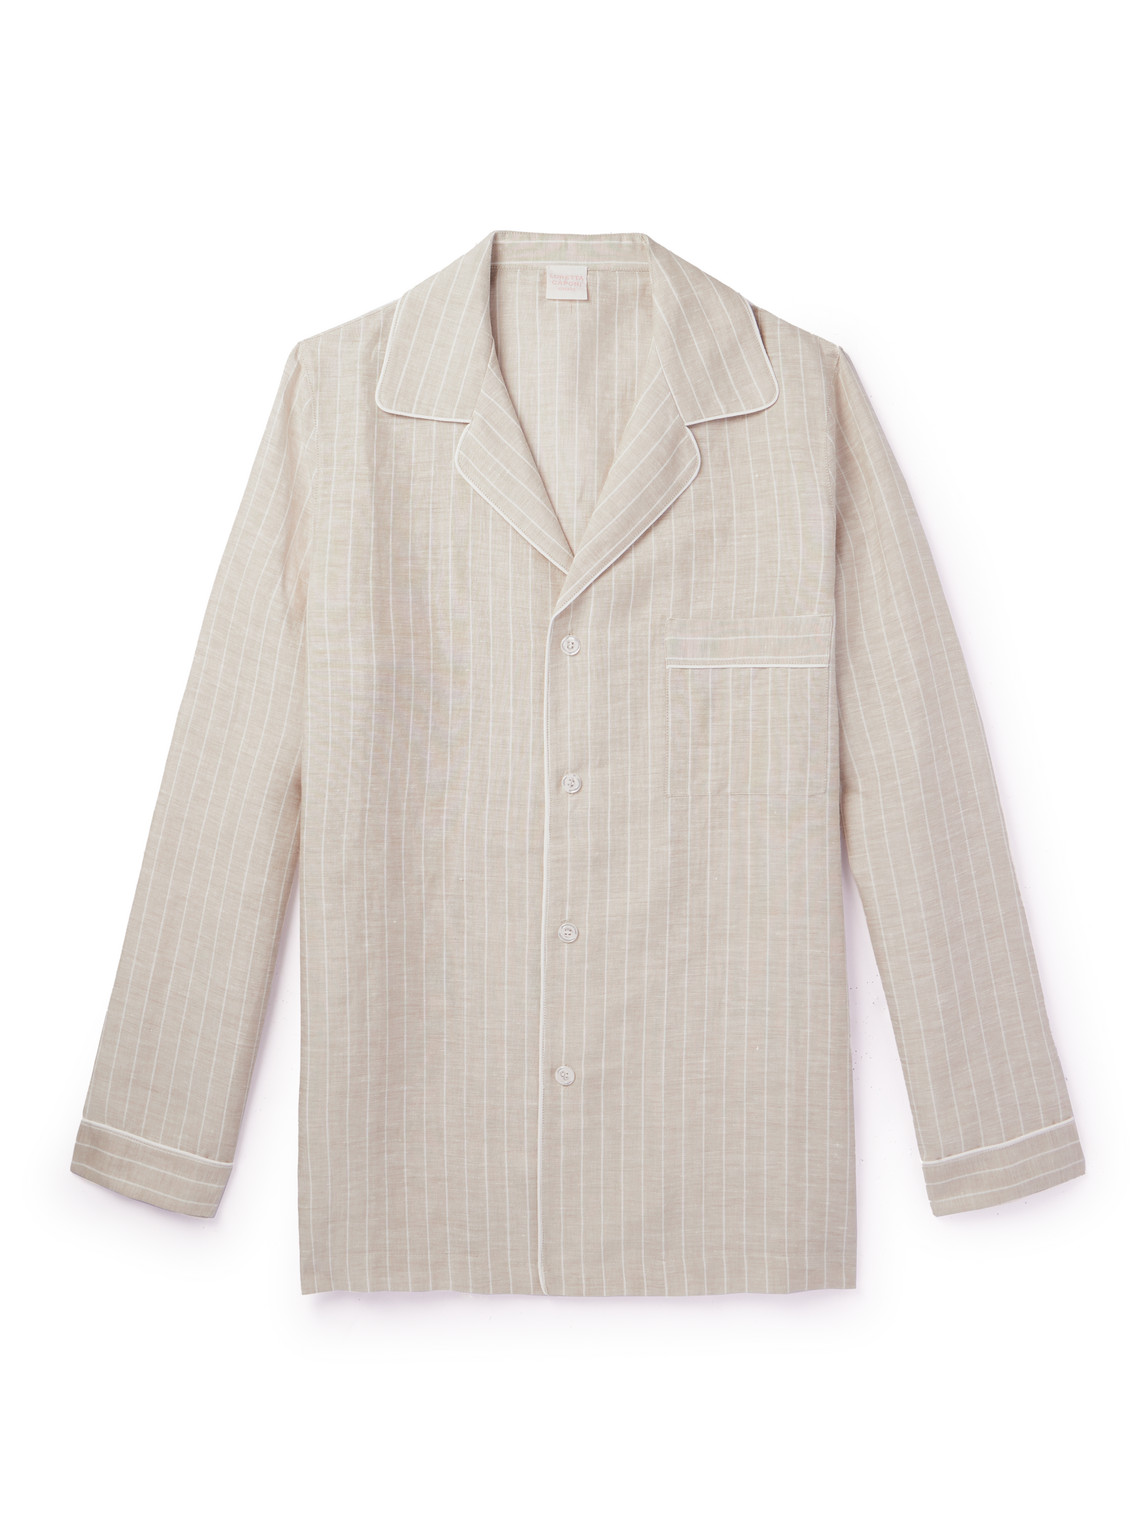 Camp-Collar Striped Linen and Cotton-Blend Shirt